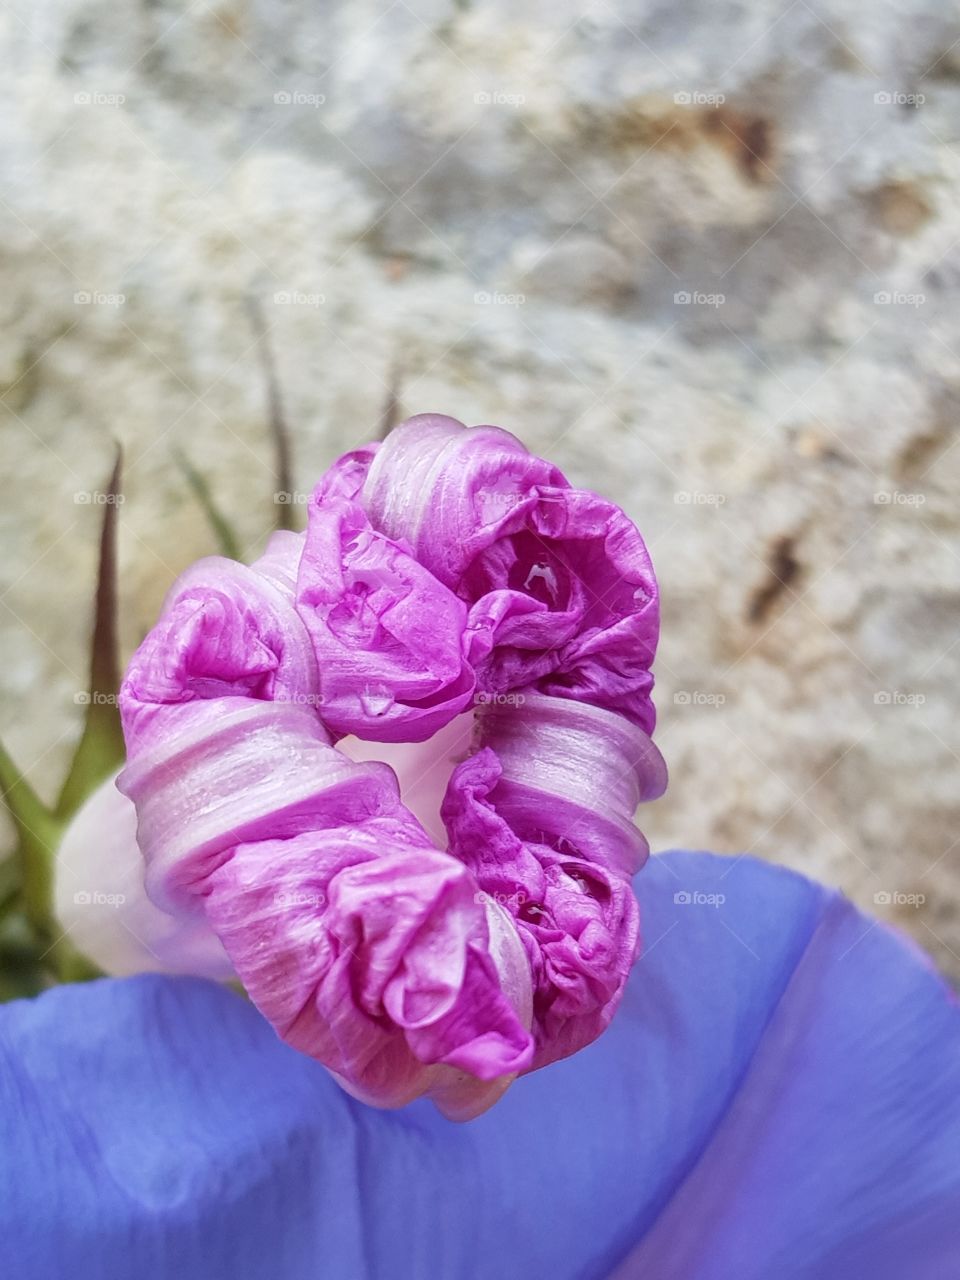 flower unfolding 6